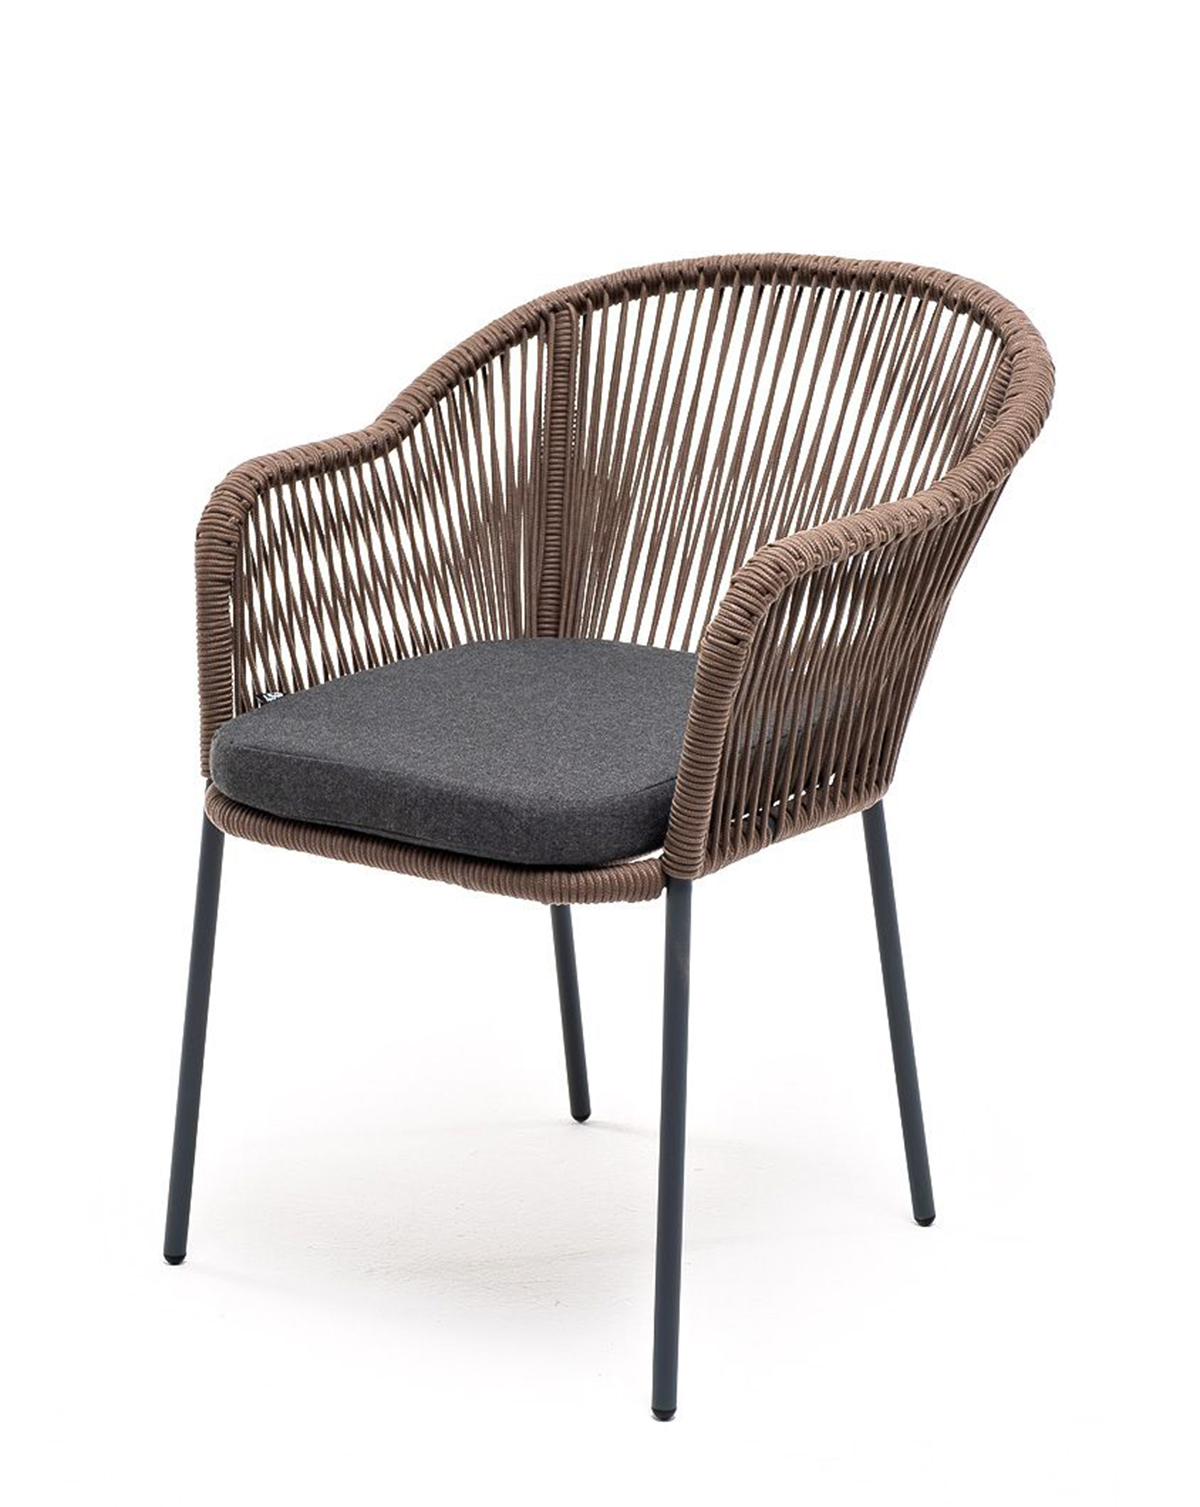 Плетеный стул из роупа Лион серо-коричневый плетеный стул из роупа лион серо коричневый